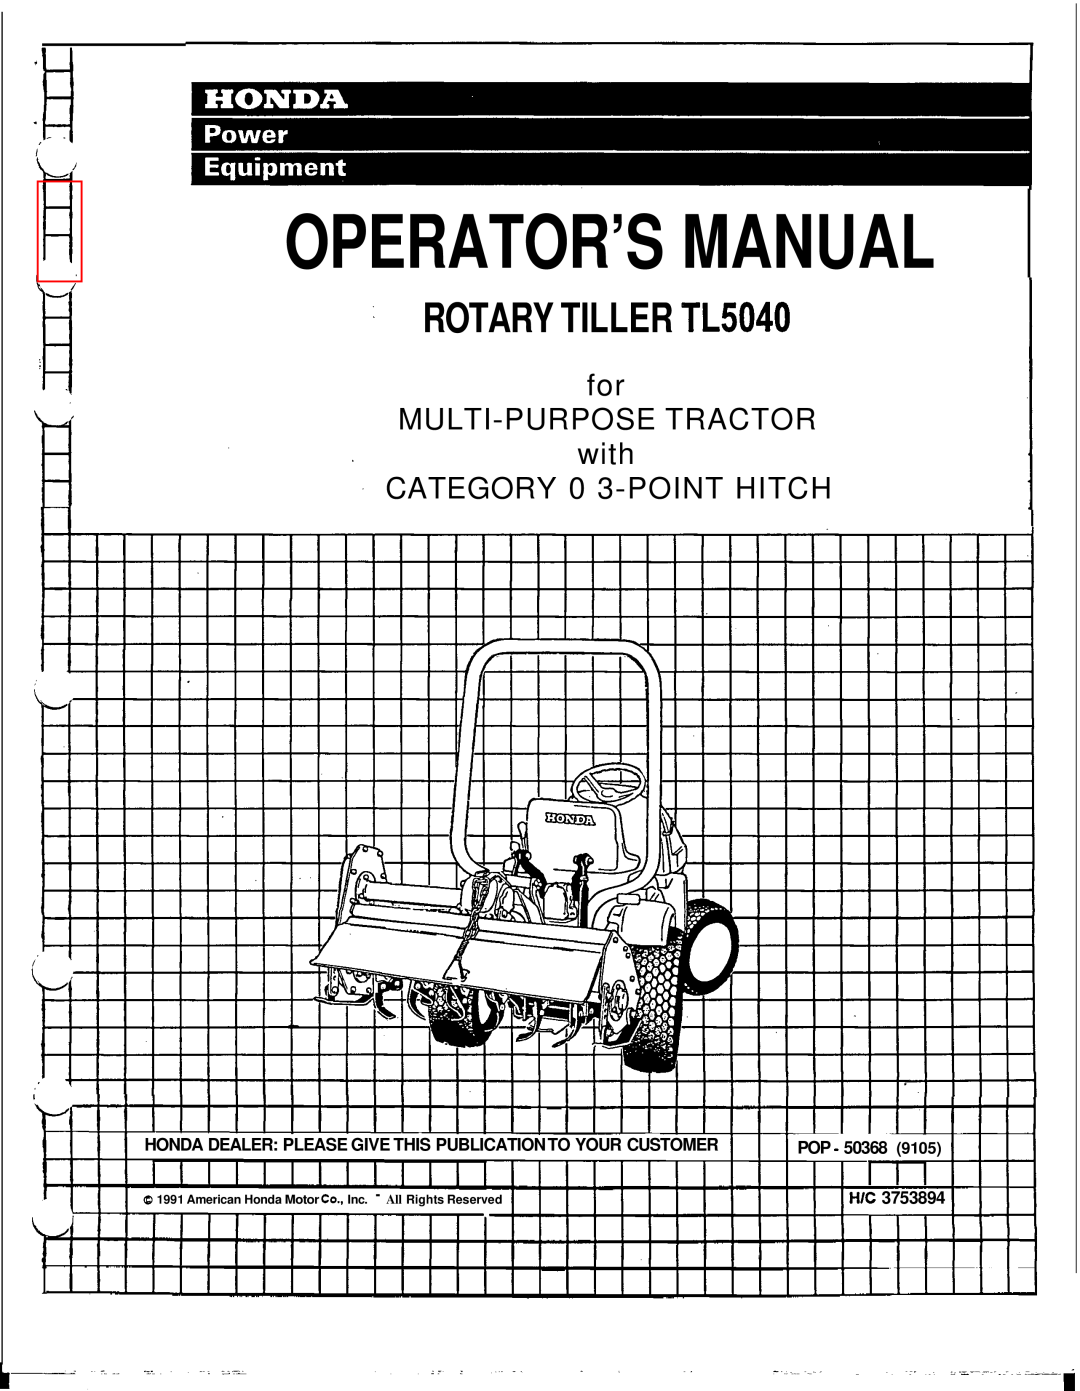 Honda Power Equipment manual Operator’S Manual, ROTARY TILLER TL5040, I I I I I I I I I I, I l l, with, Pop, ~~~ ~ 